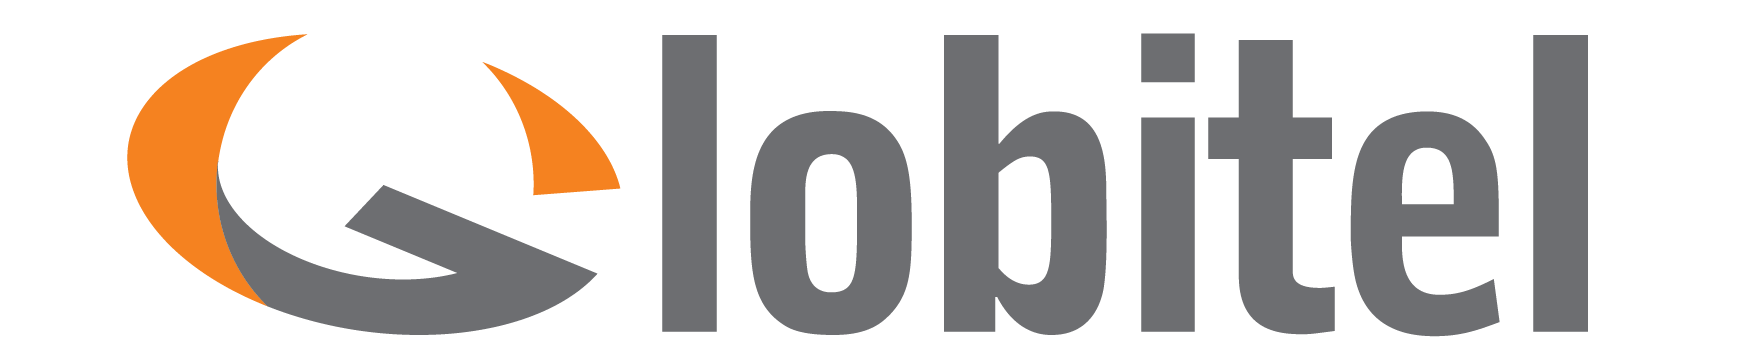 Globitel logo